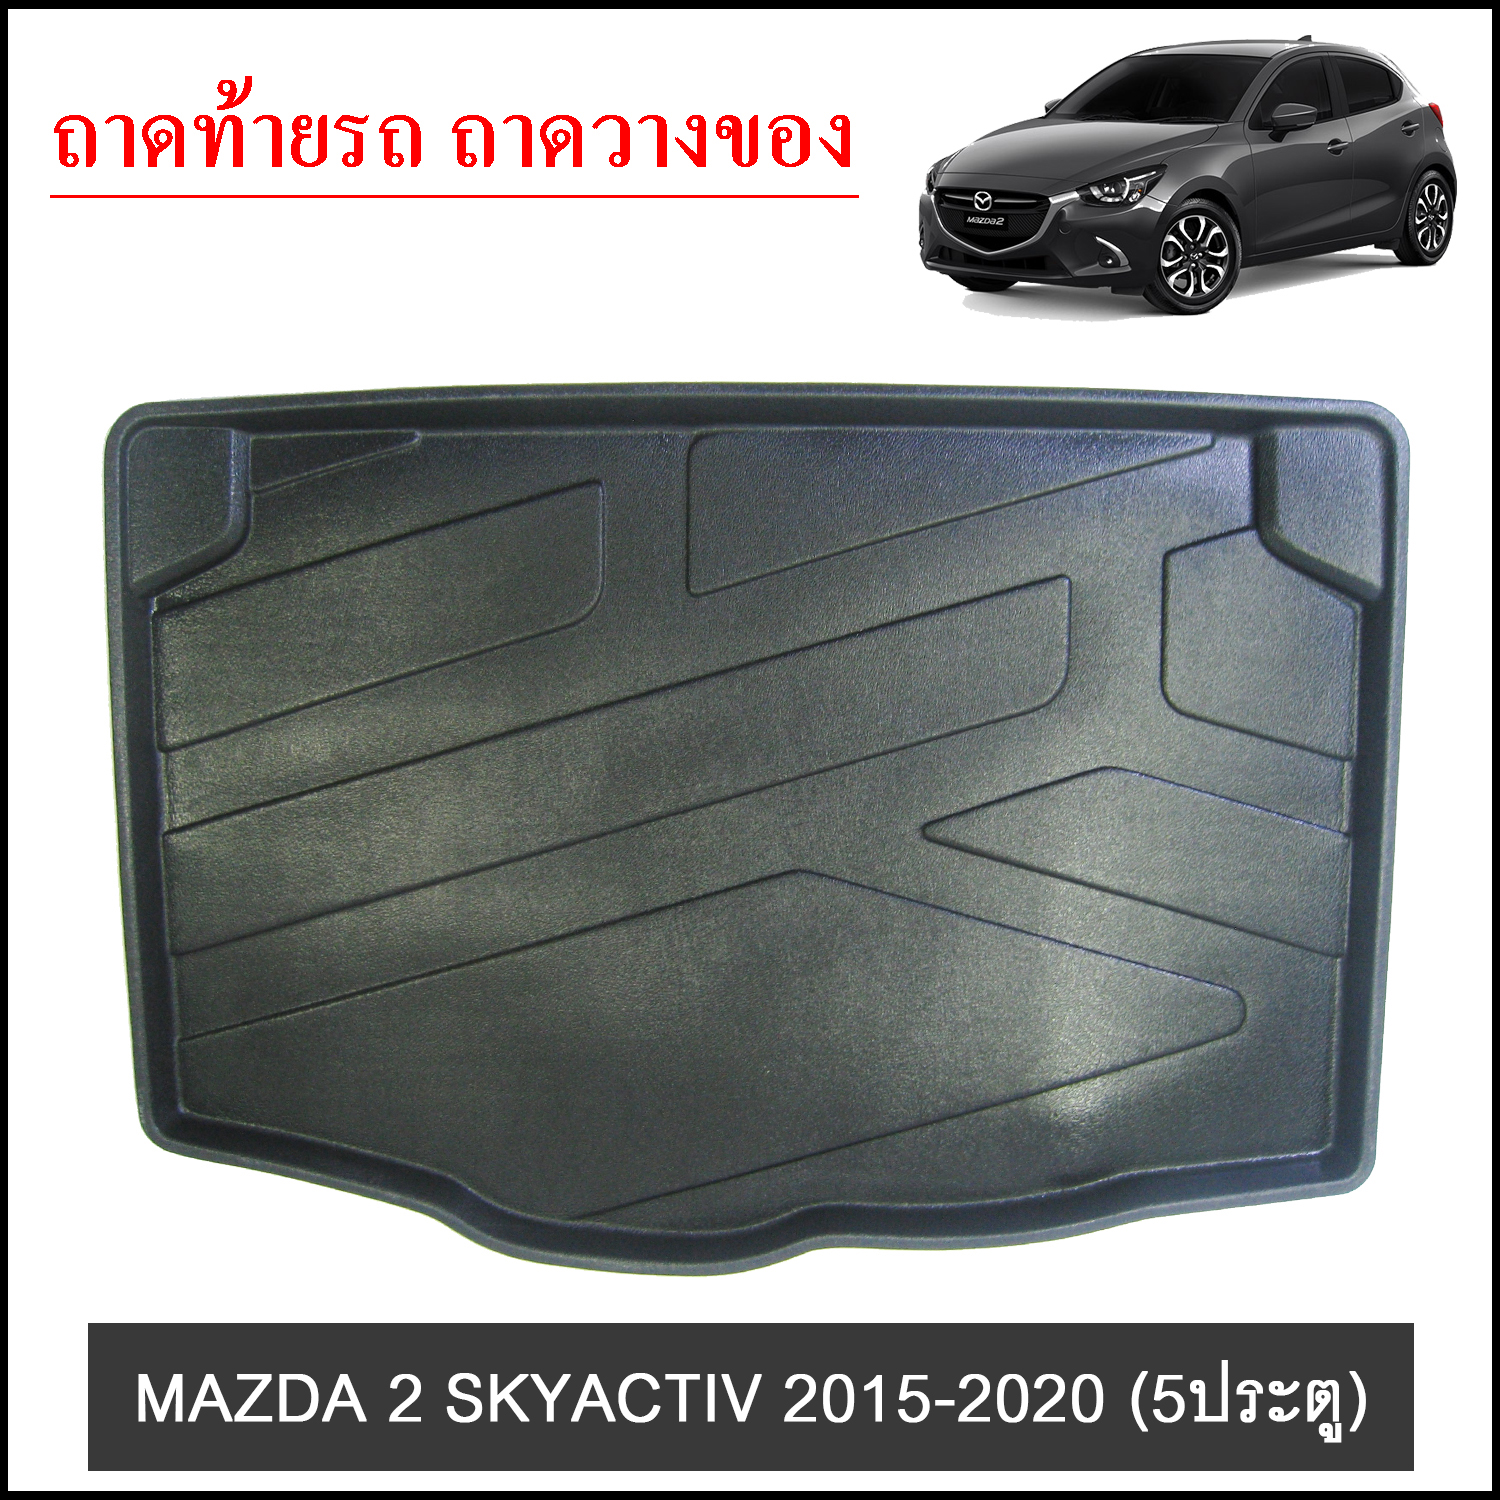 MAZDA 2 Skyactiv 2015-2020 Hatchback